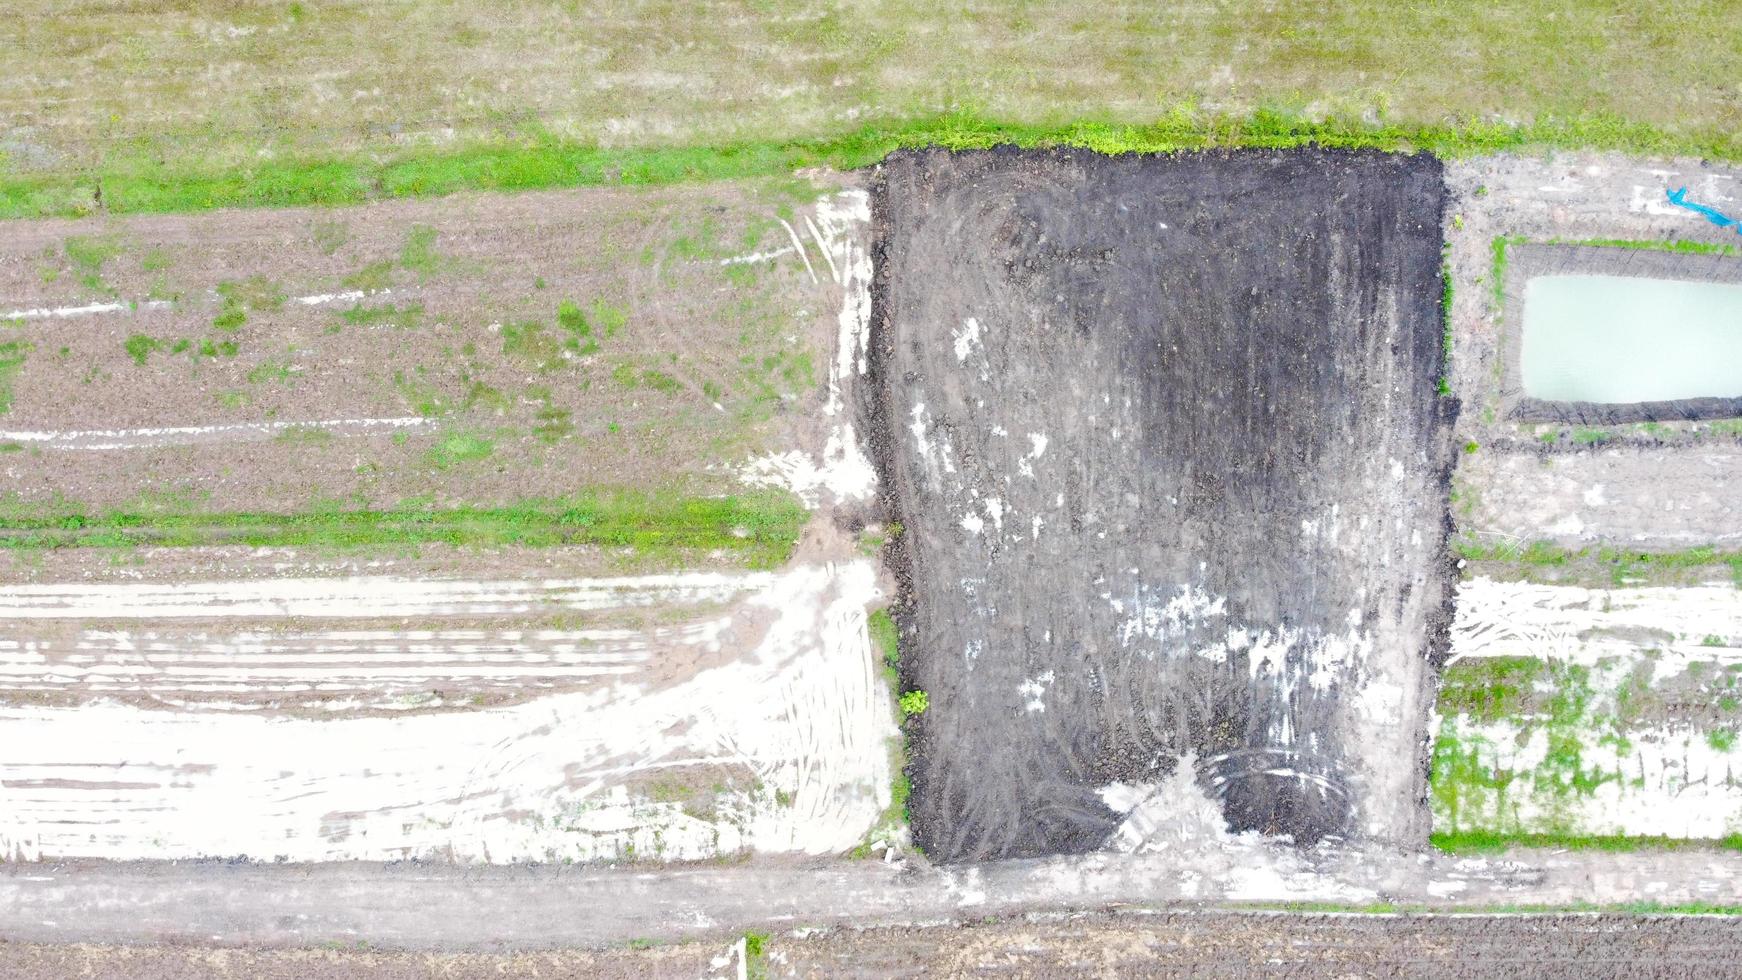 vista aérea de campos verdes y tierras de cultivo en las zonas rurales de tailandia. foto